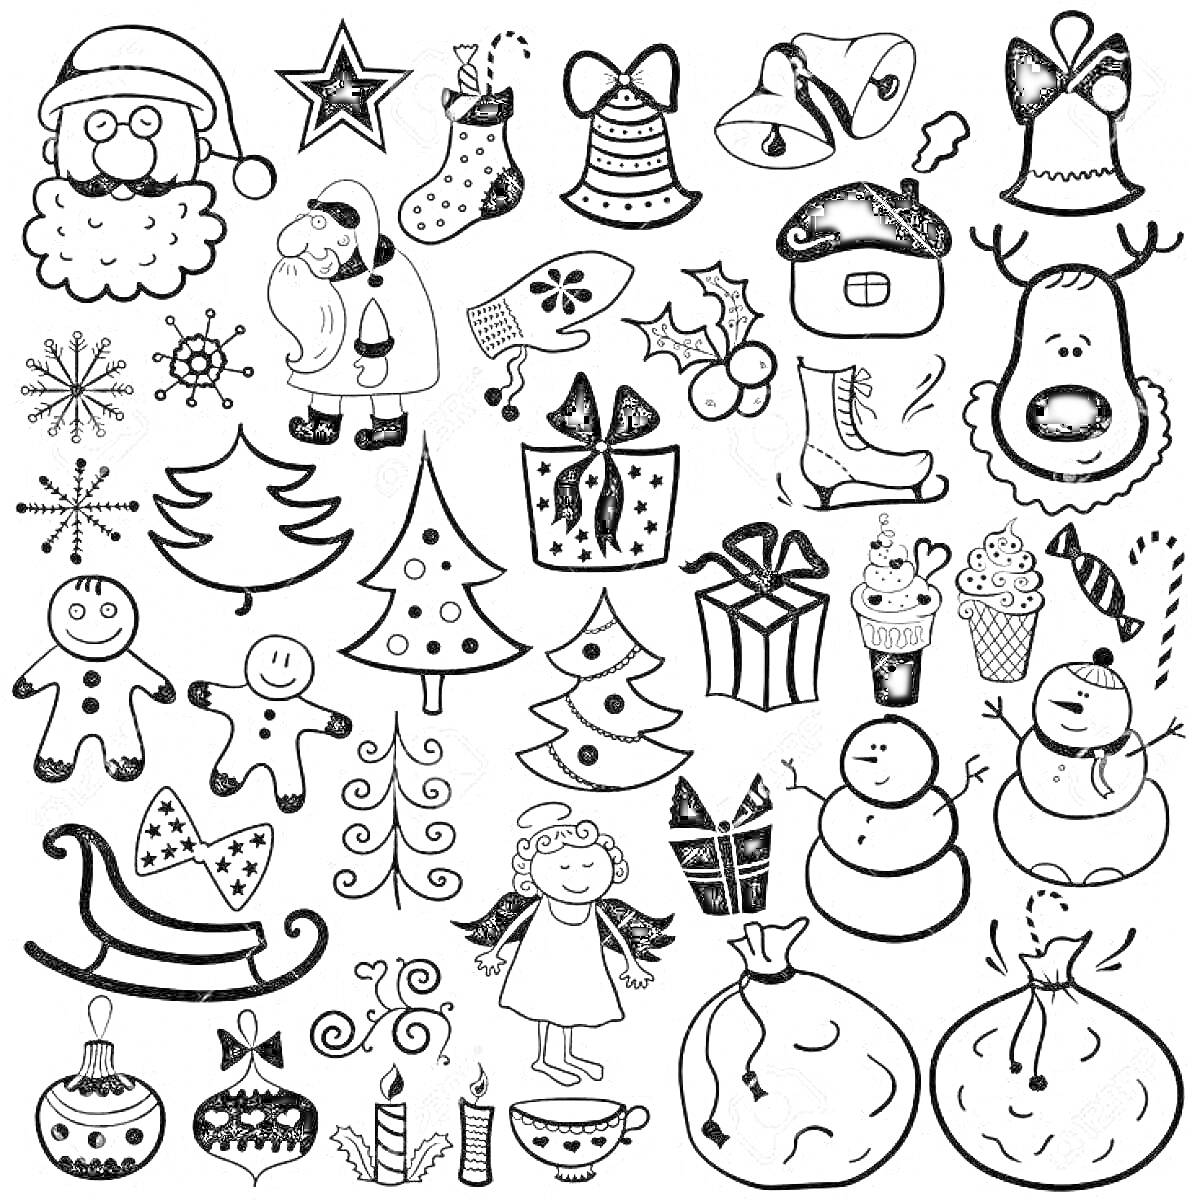 Раскраска Новый год мини (Санта, звезда, носок, рукавица, колокольчики, шапка, олень, снежинки, конфета, санки, ёлка, подарок, леденец, пряник, свечи, снежинки, ангел, снеговик, мандарин, узор, колокольчик, сапог, новогодние шары, горячее какао, рождественский носо